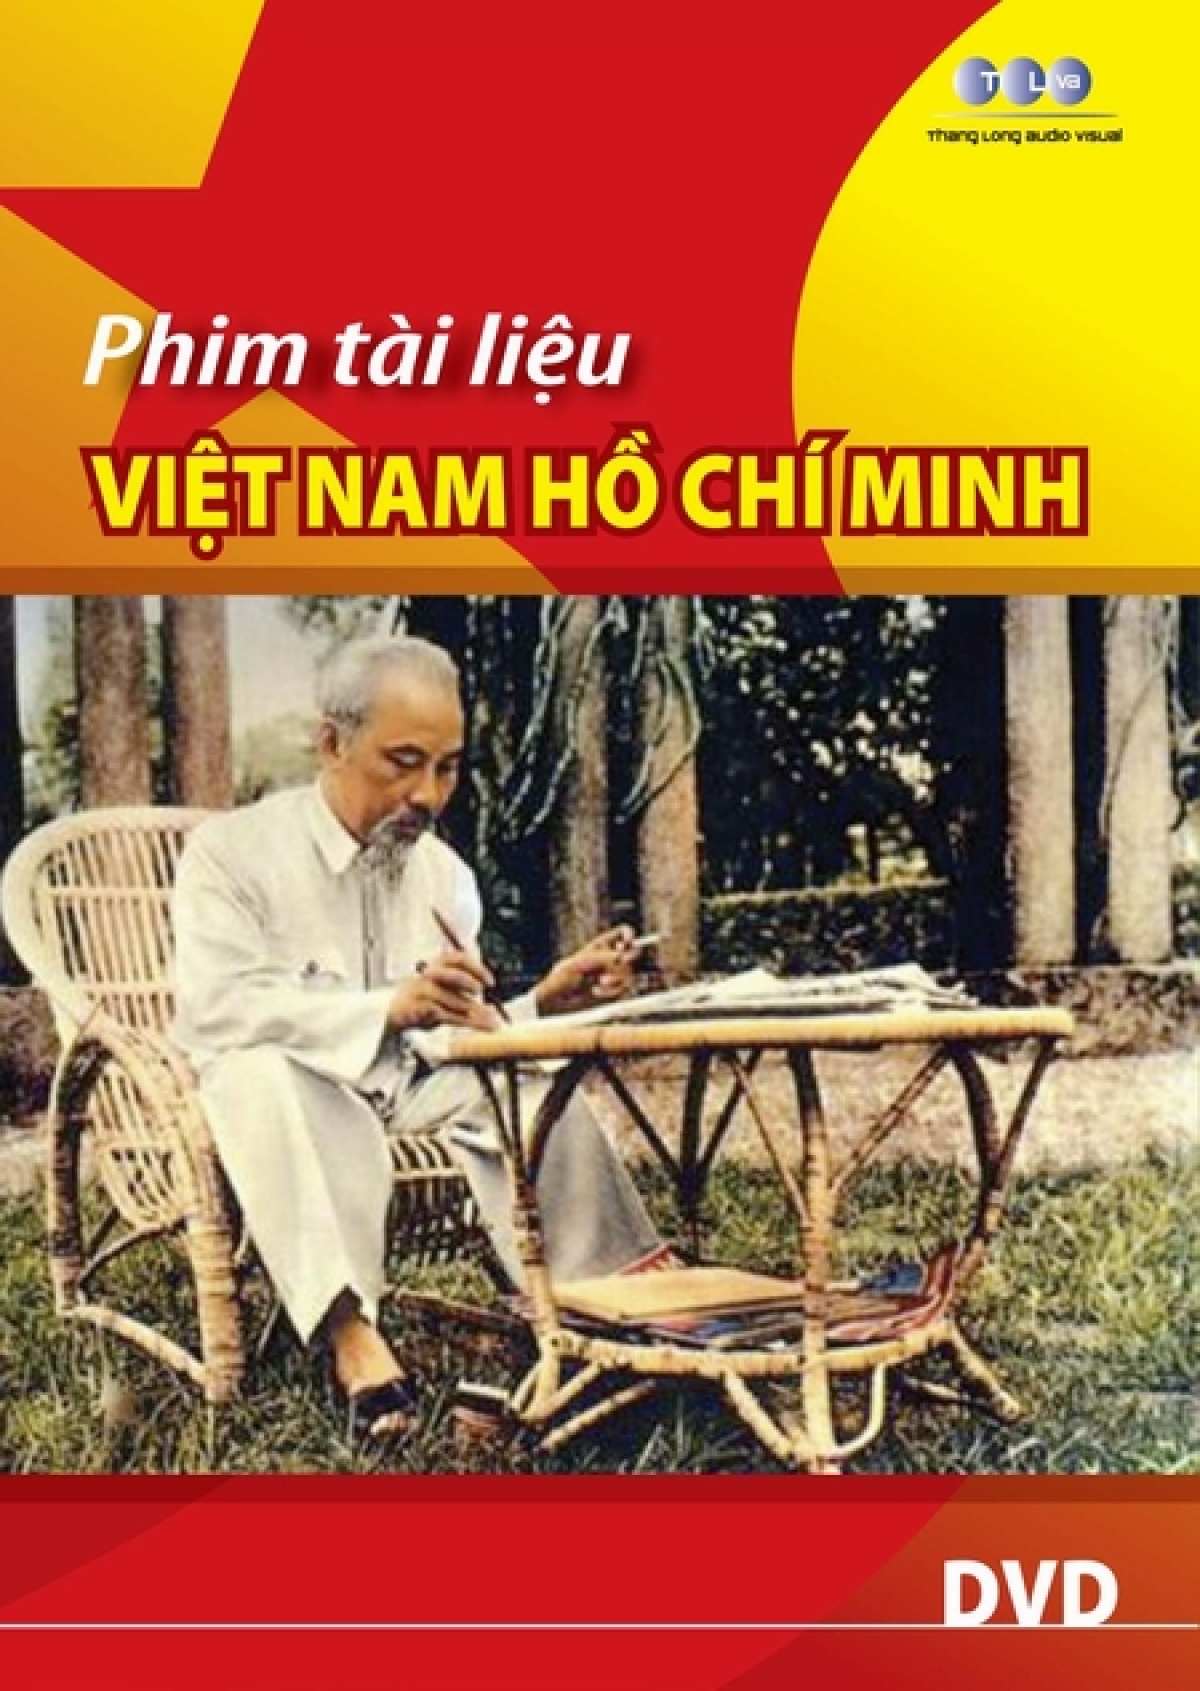 Bộ phim tài liệu “Việt Nam - Hồ Chí Minh”